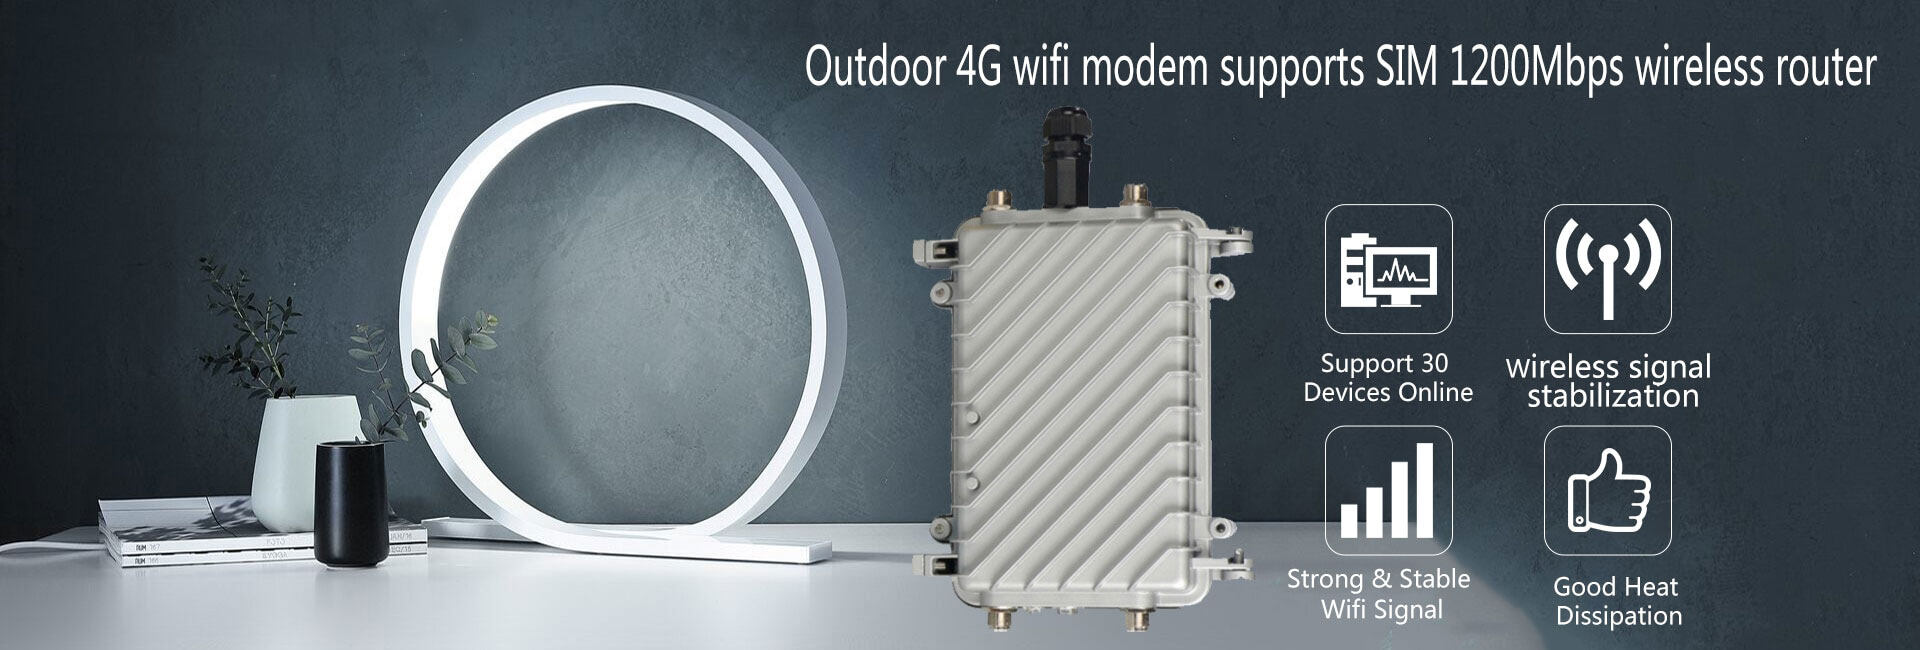 รายละเอียดเพิ่มเติมเกี่ยวกับ Router 4G ใส่ซิมใช้ได้เลย ไม่ต้องตั้งค่า เสียบสายแลนได้ 5G/4G WiFi 4G Wireless Router MiFi 4G WiFi พกพา ใช้3G ,4Gได้ทุกค่าย AIS DTAC True แอร์การ์ด โมบายไวไฟ ไวไฟพกพา